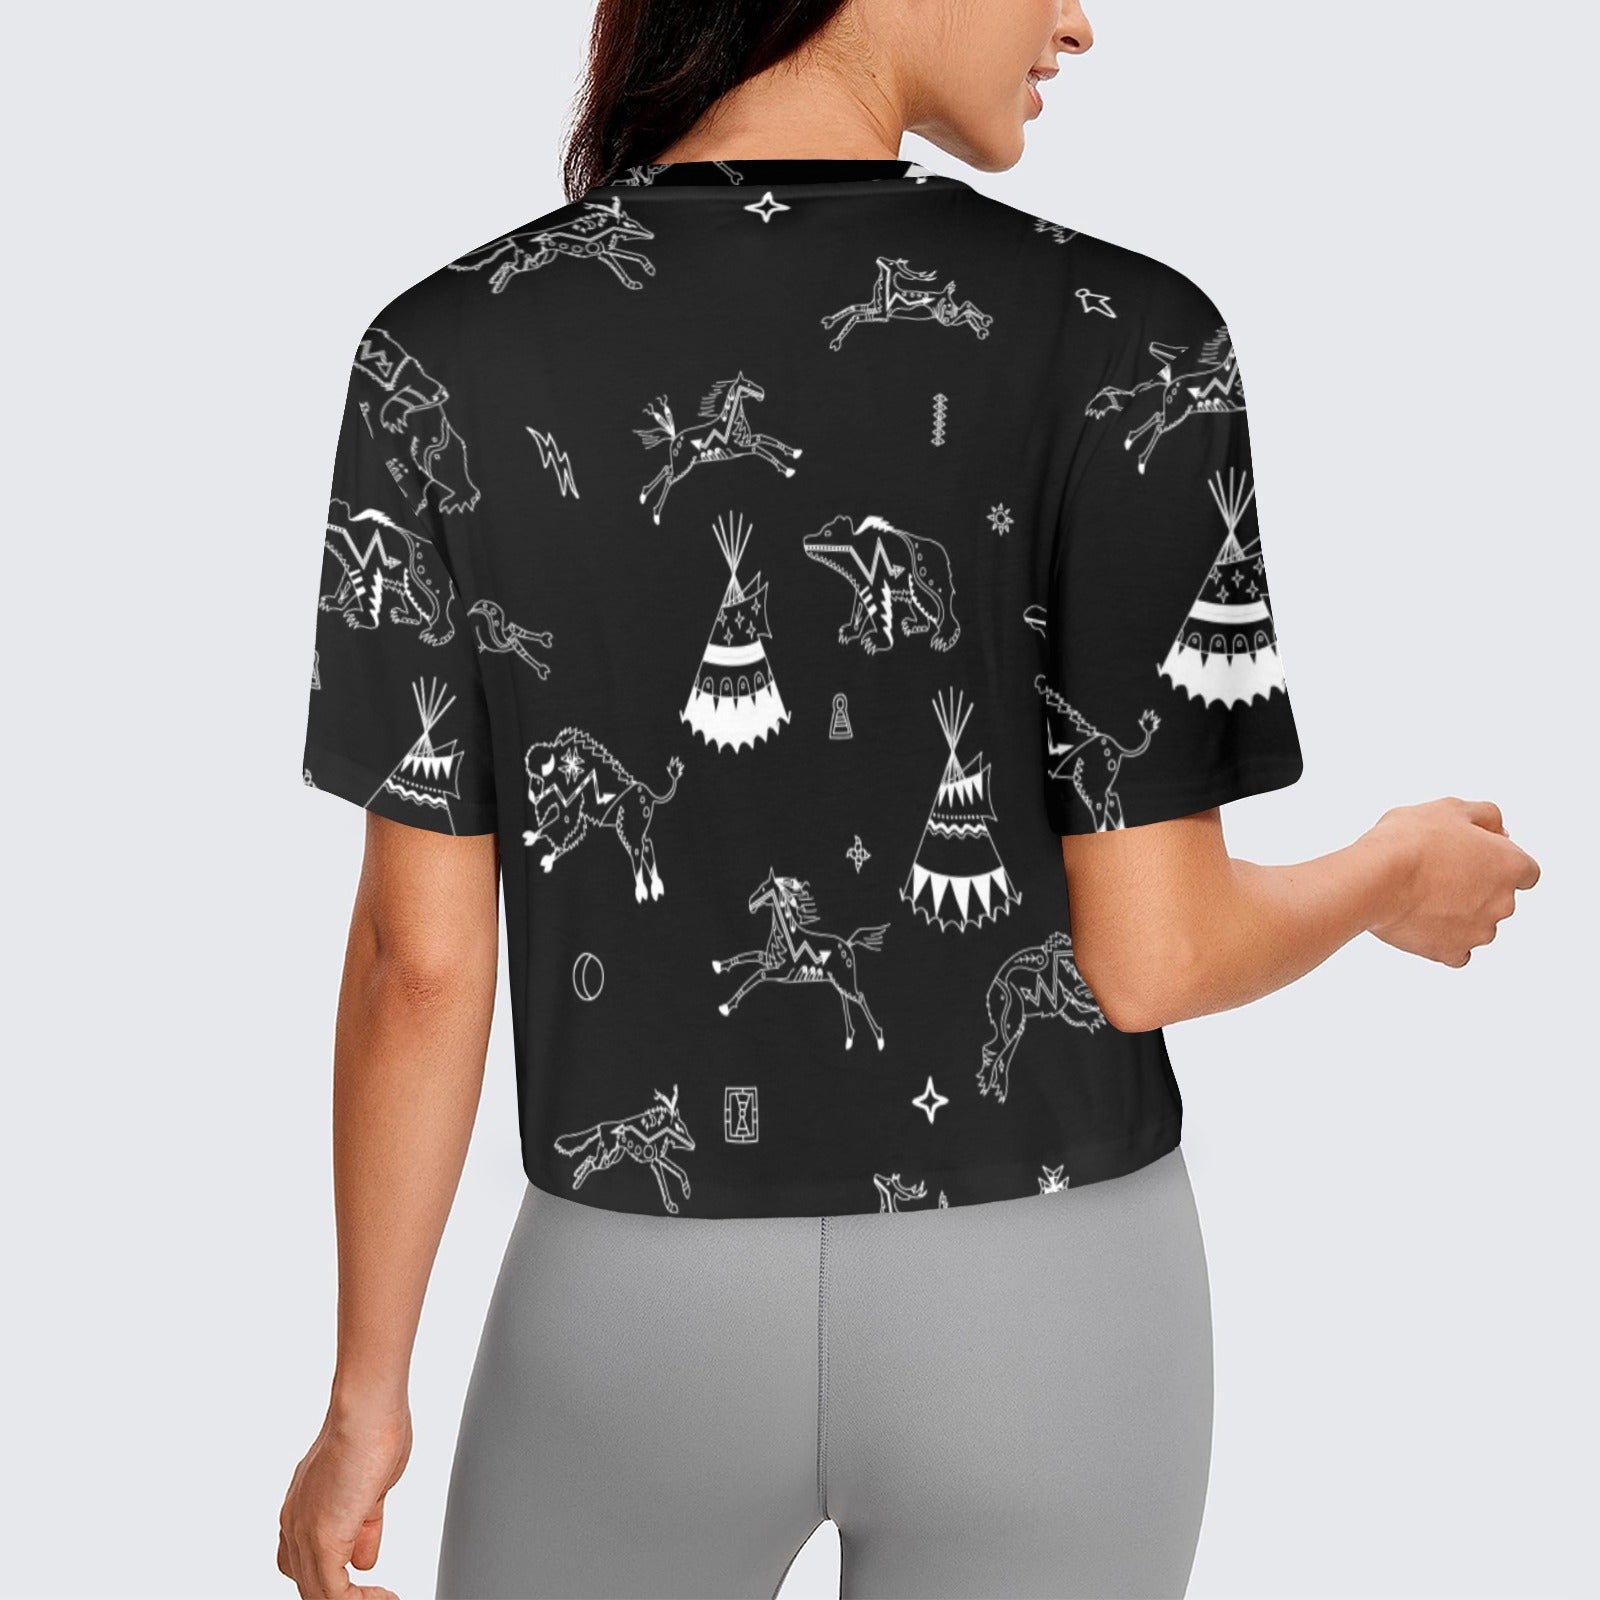 Ledger Dables Black Women's Cropped T-shirt